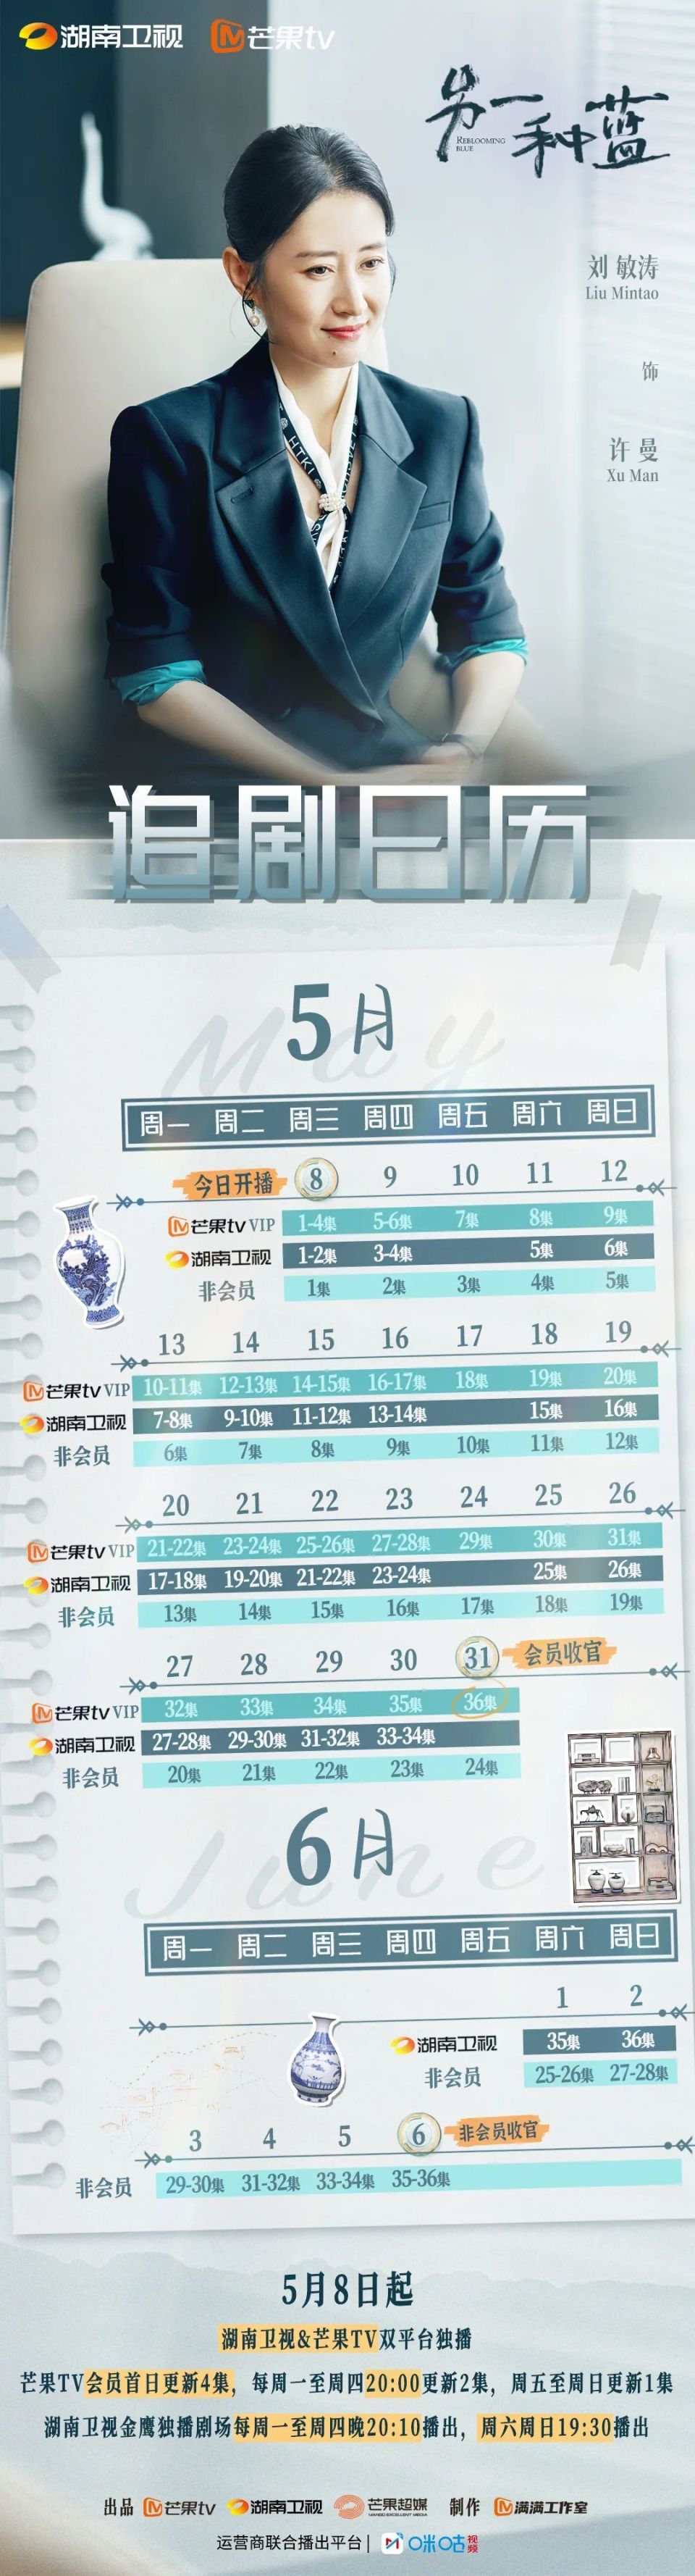 湖南卫视电视剧节目表图片